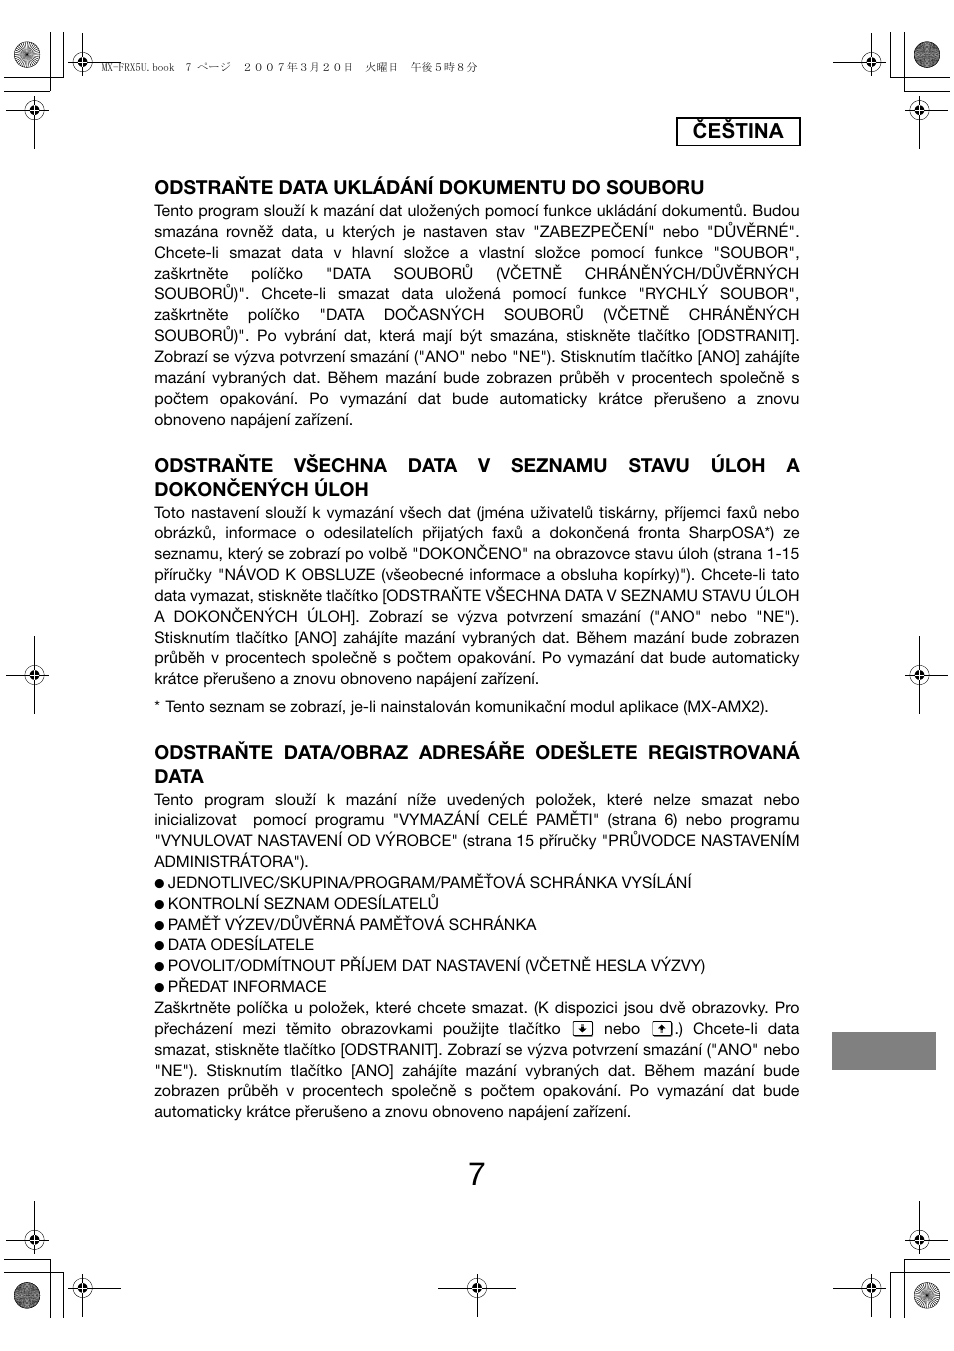 Čeština, Odstraňte data ukládání dokumentu do souboru | Sharp Funkcja identyfikacji użytkownika User Manual | Page 165 / 184